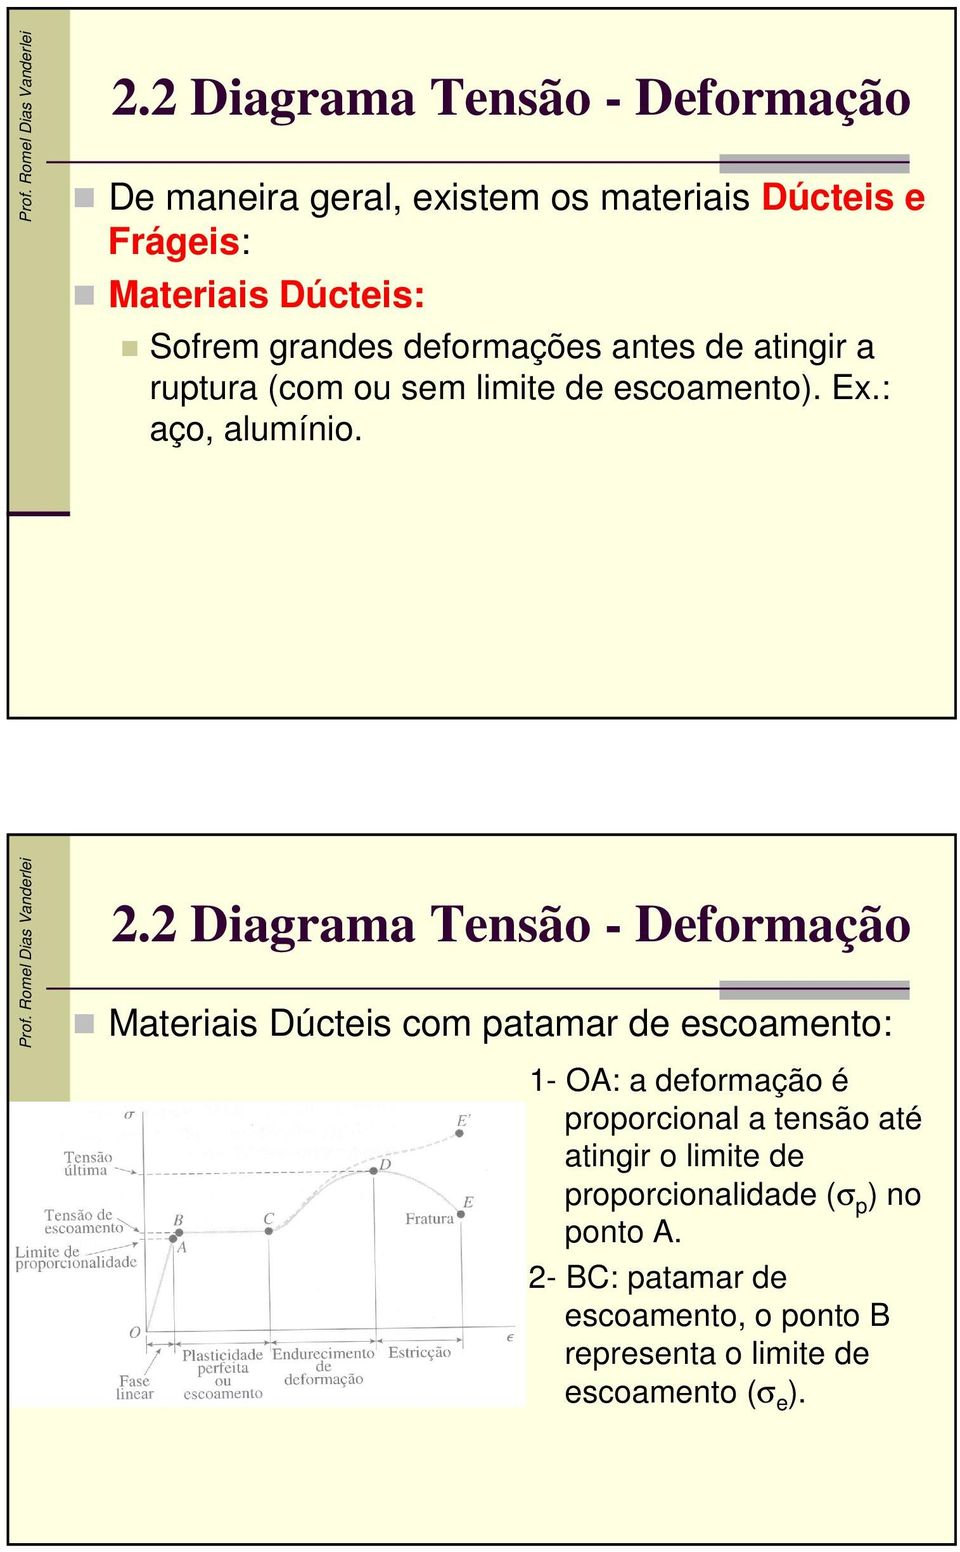 2 Diagrama Tensão - Deformação Materiais Dúcteis com patamar de escoamento: 1- O: a deformação é proporcional a tensão